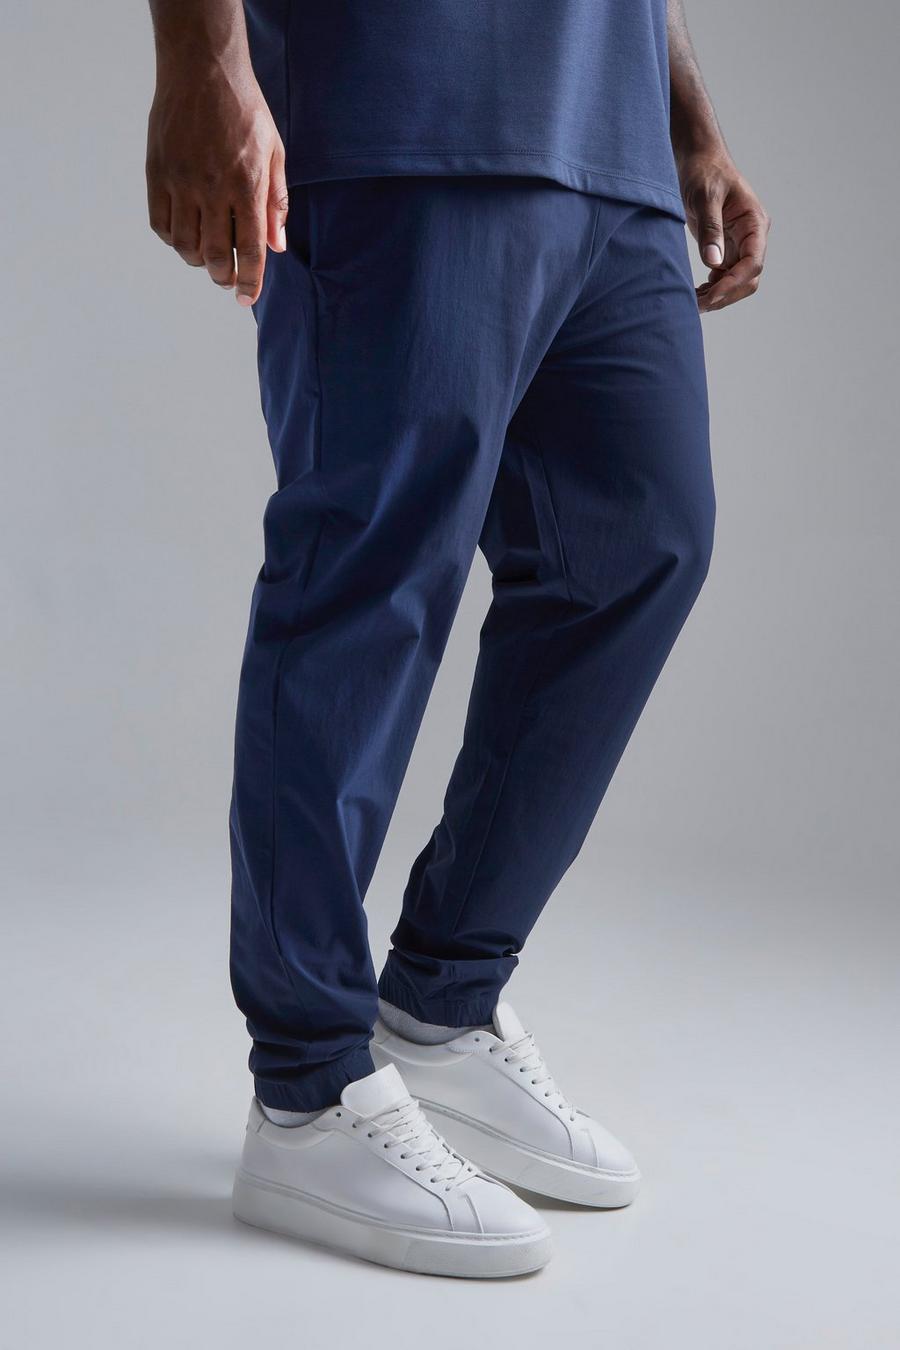 Pantaloni tecnici Plus Size Slim Fit con polsini alle caviglie, Navy blu oltremare